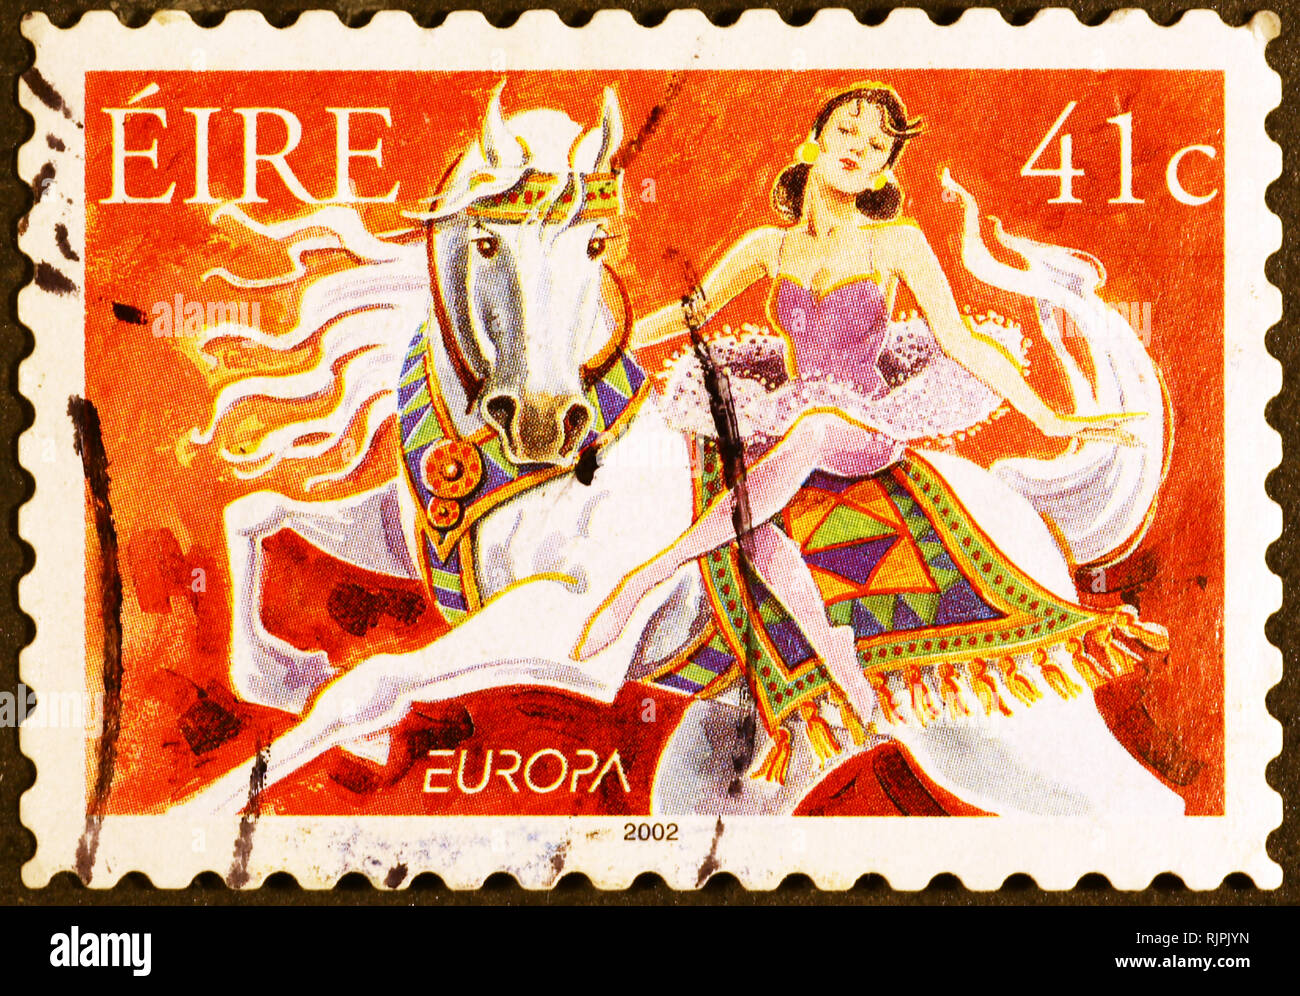 Cavalière du cirque sur timbre irlandais Banque D'Images